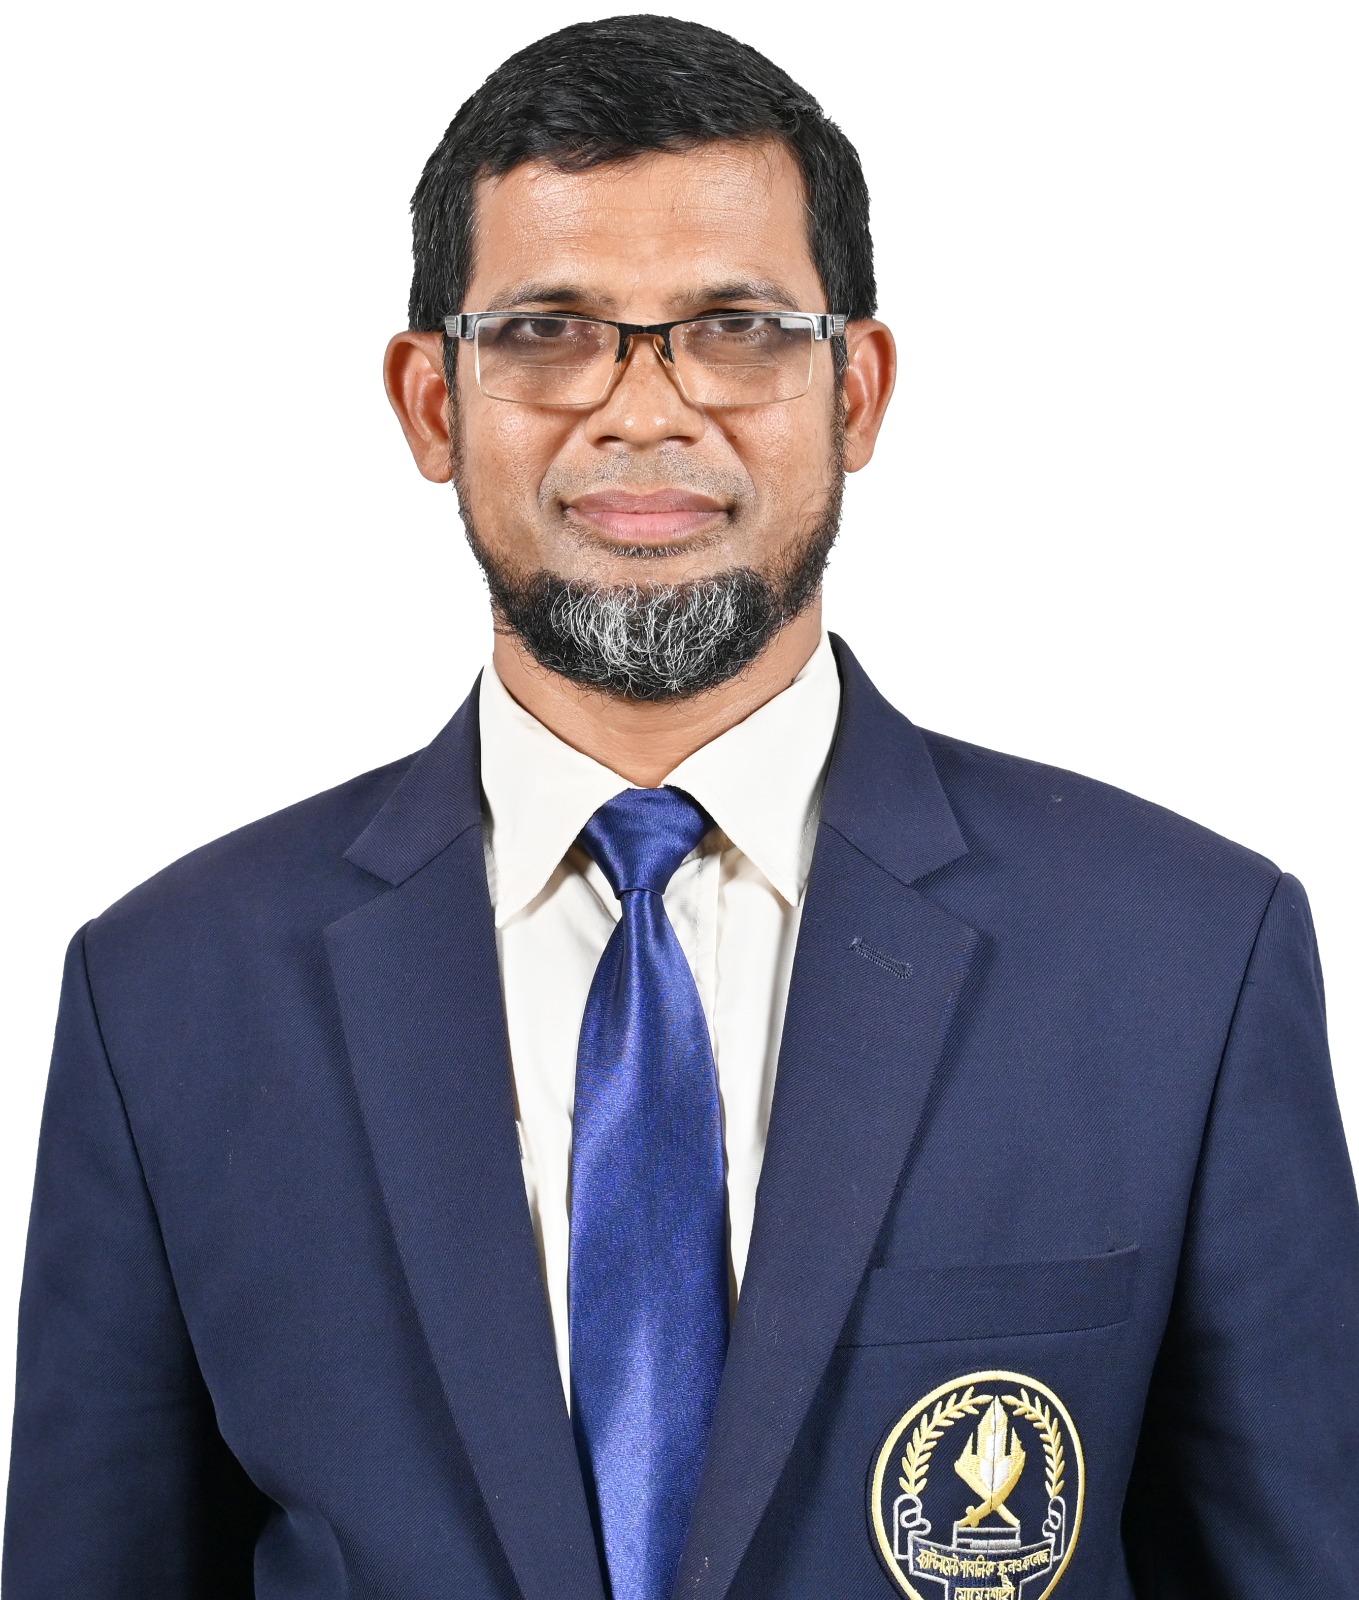 Muhammad Anisur Rahman